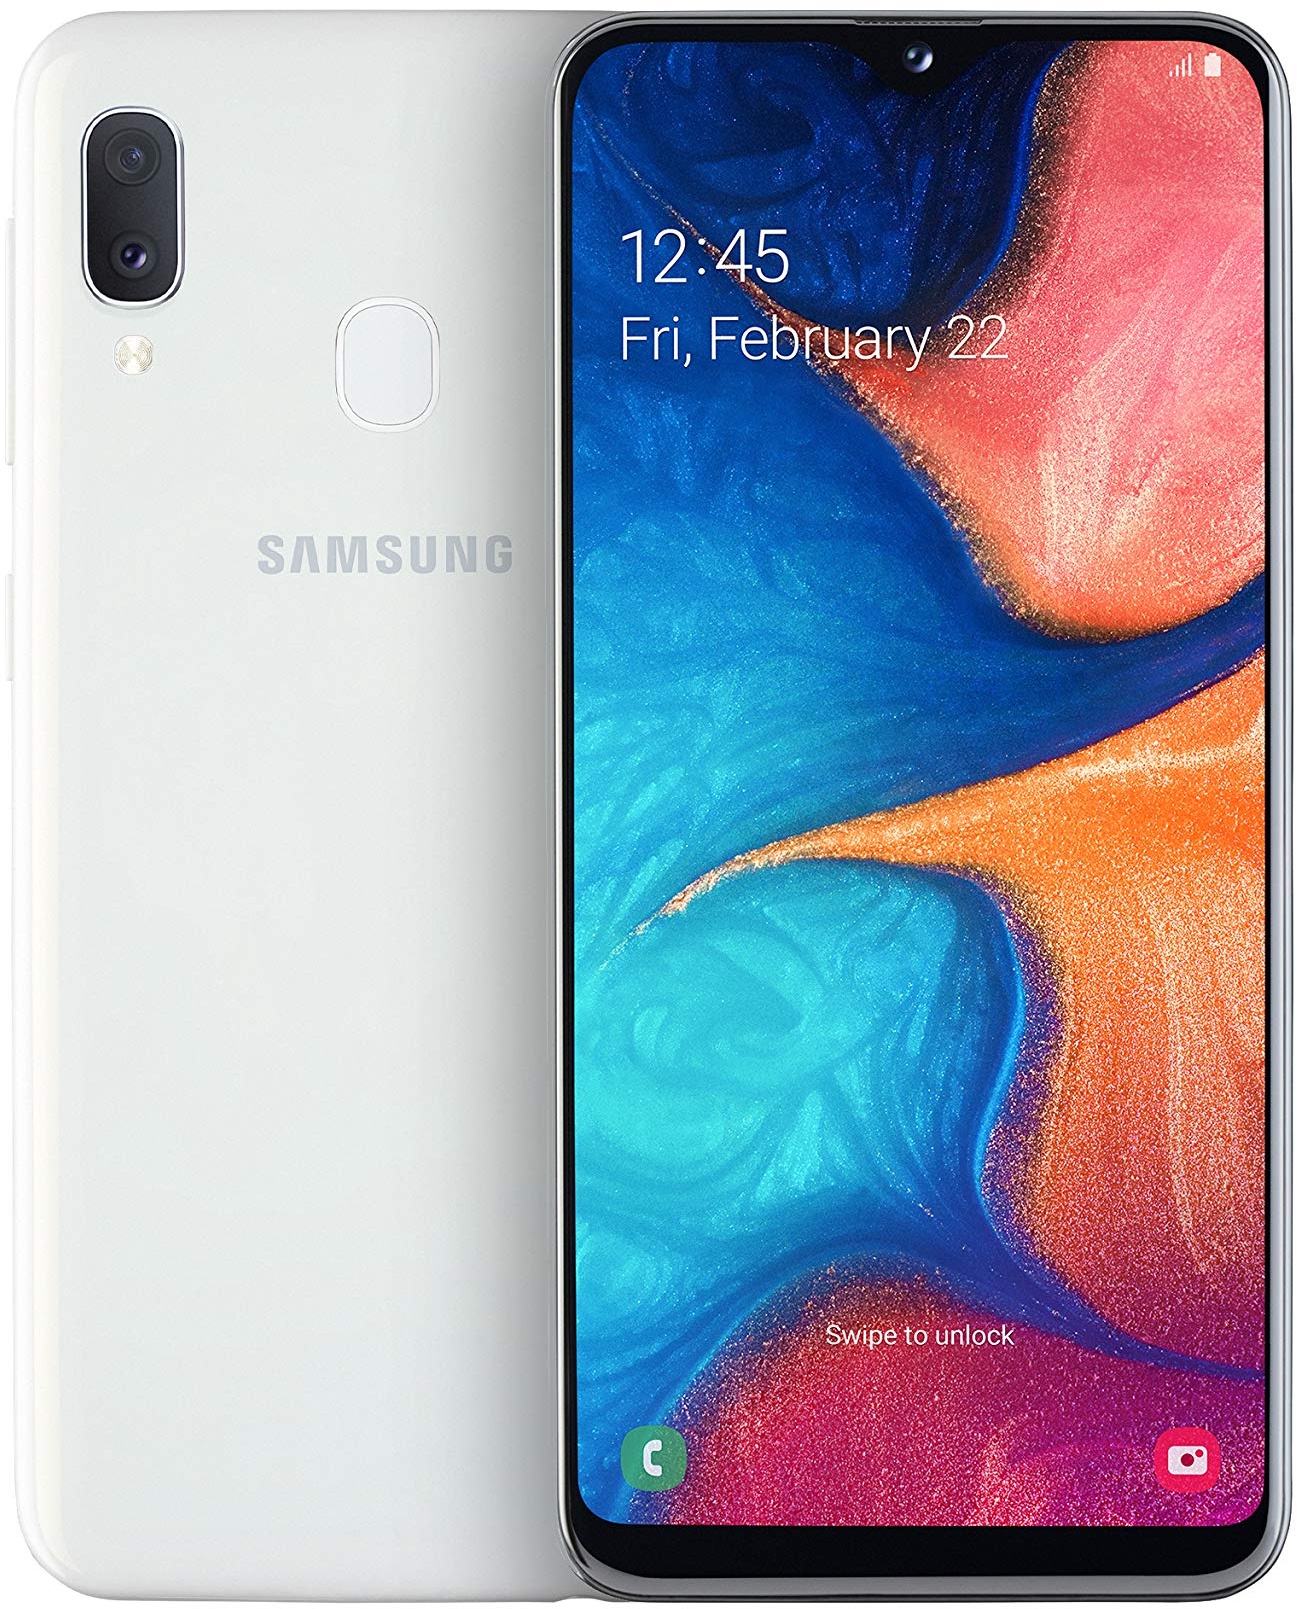 Samsung Galaxy A20e Smartphone (14.82cm (148.2 mm) 5.8 Zoll) 32GB interner Speicher, 3GB RAM, Dual SIM, Weiß) - Deutsche Version